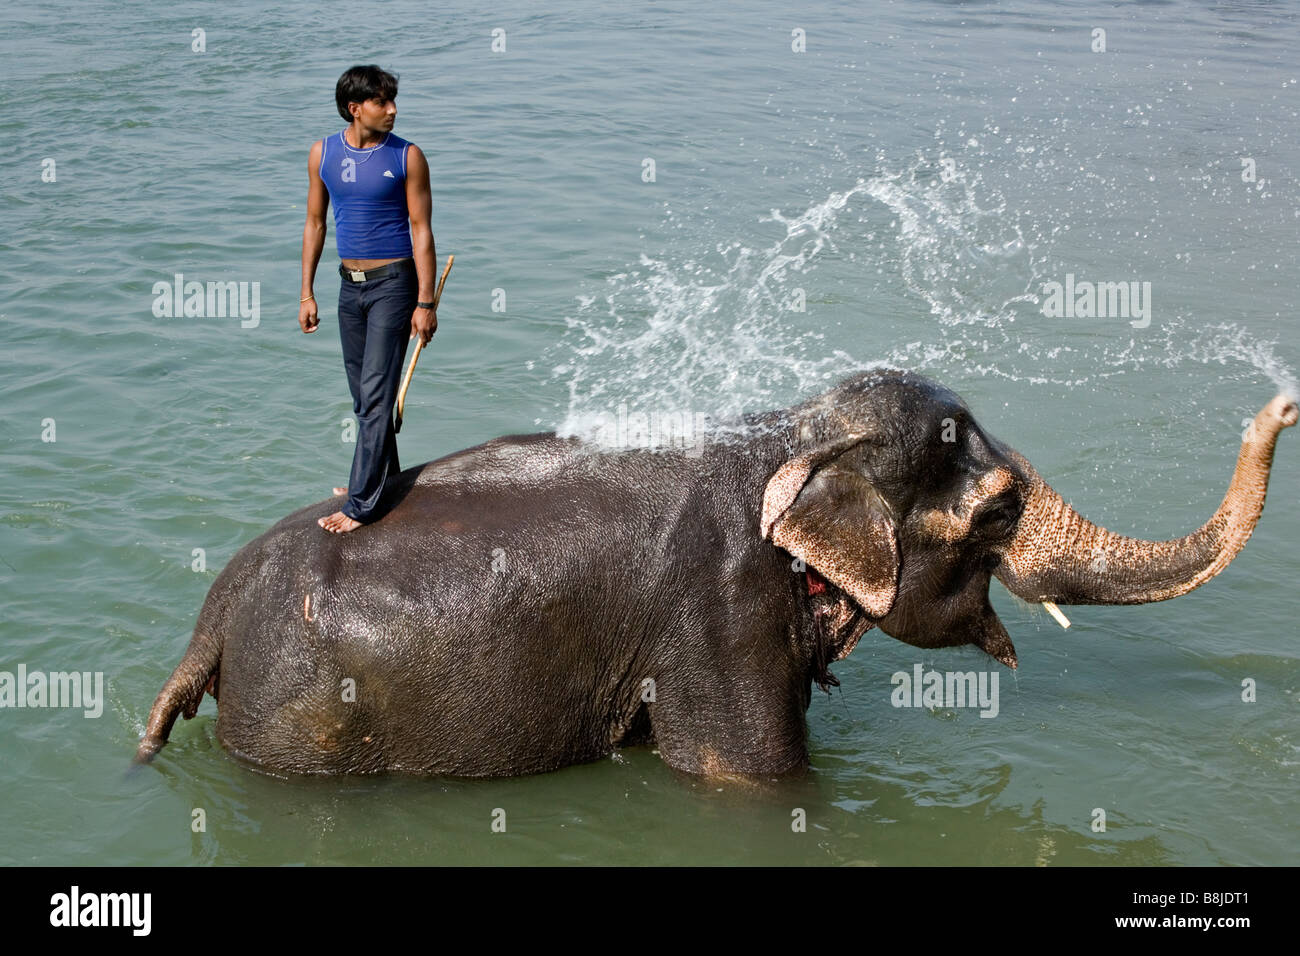 Le bain des éléphants dans la rivière Rapti Rapoti en parc national Royal de Chitwan Népal Banque D'Images